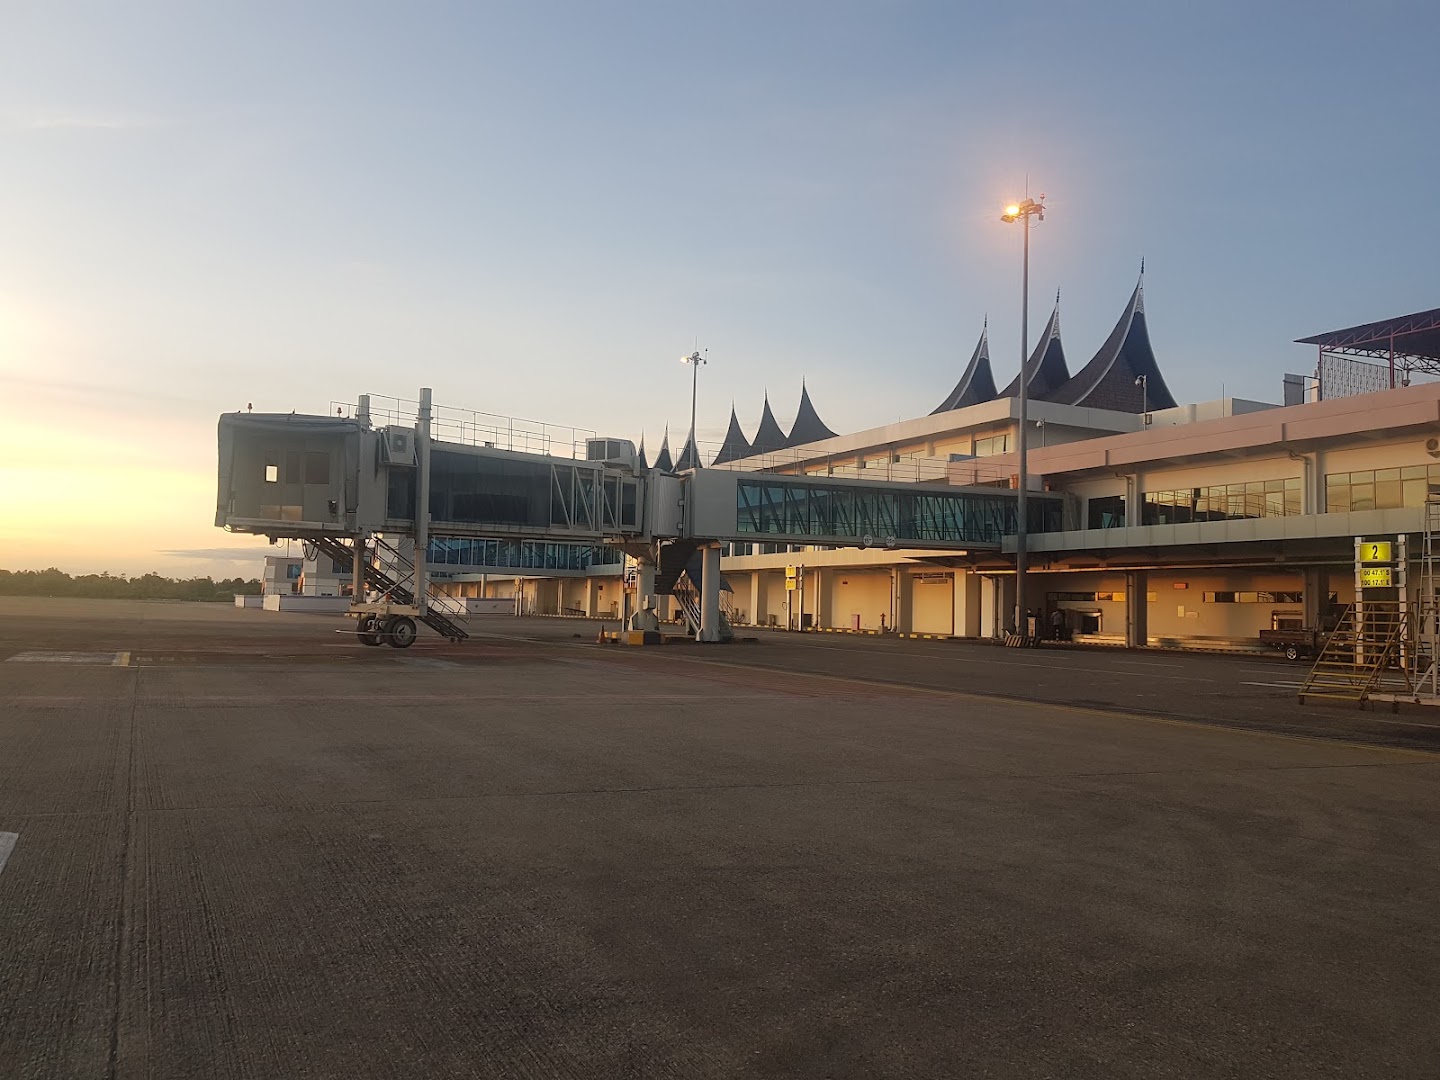 Bandara Internasional Minangkabau Photo